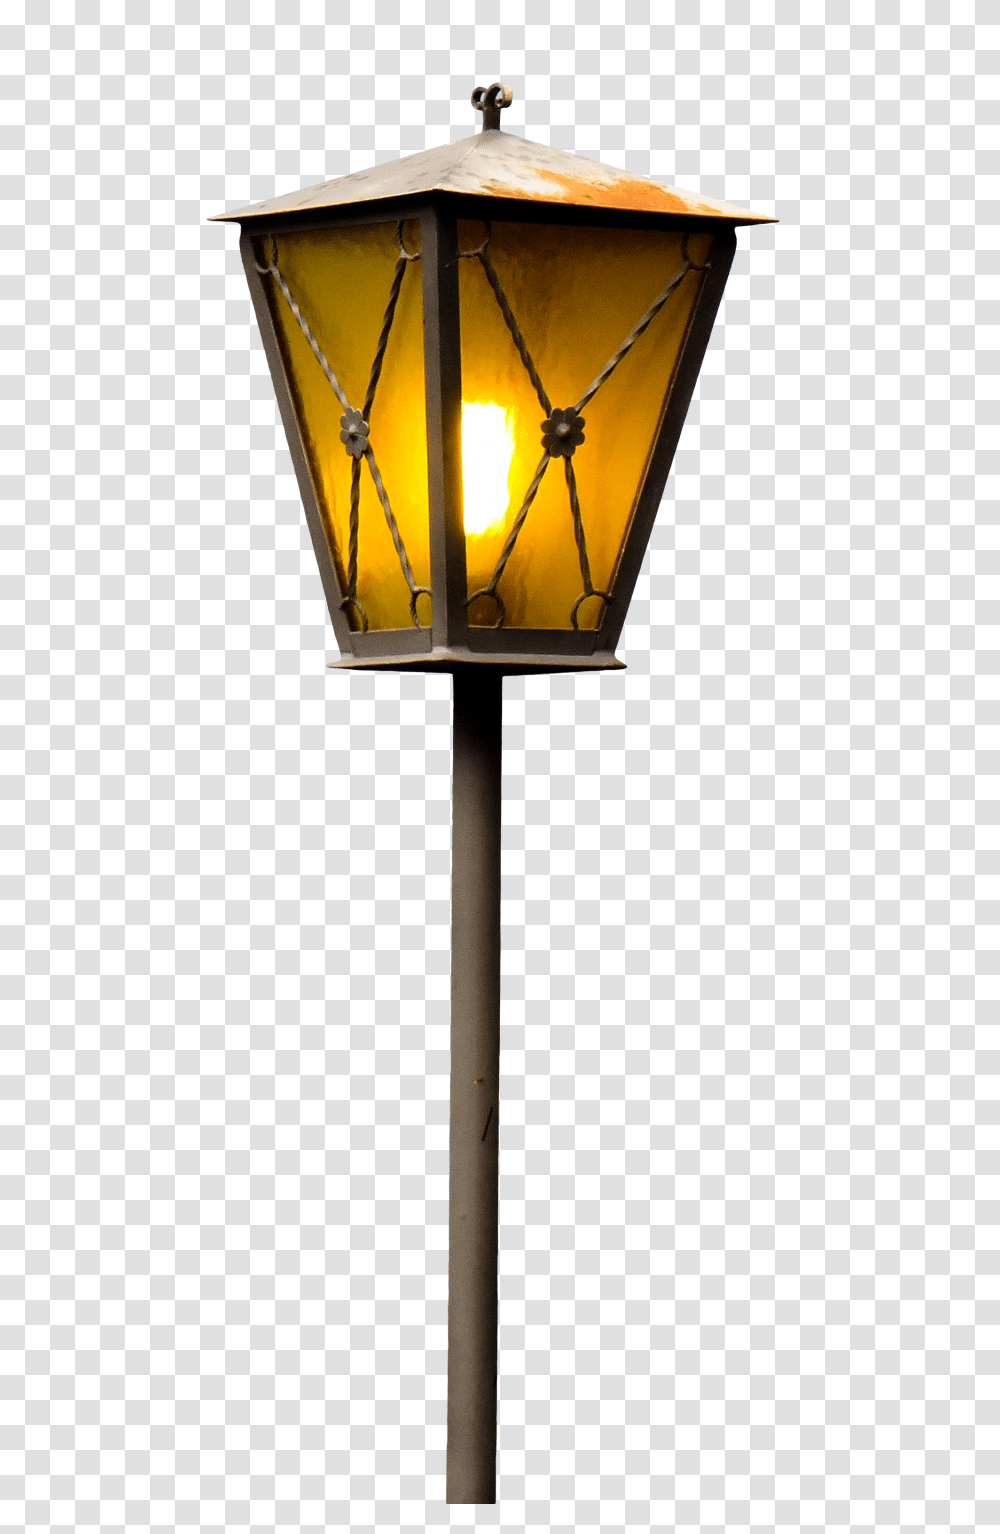 Street Lamp Image, Lampshade, Lamp Post Transparent Png